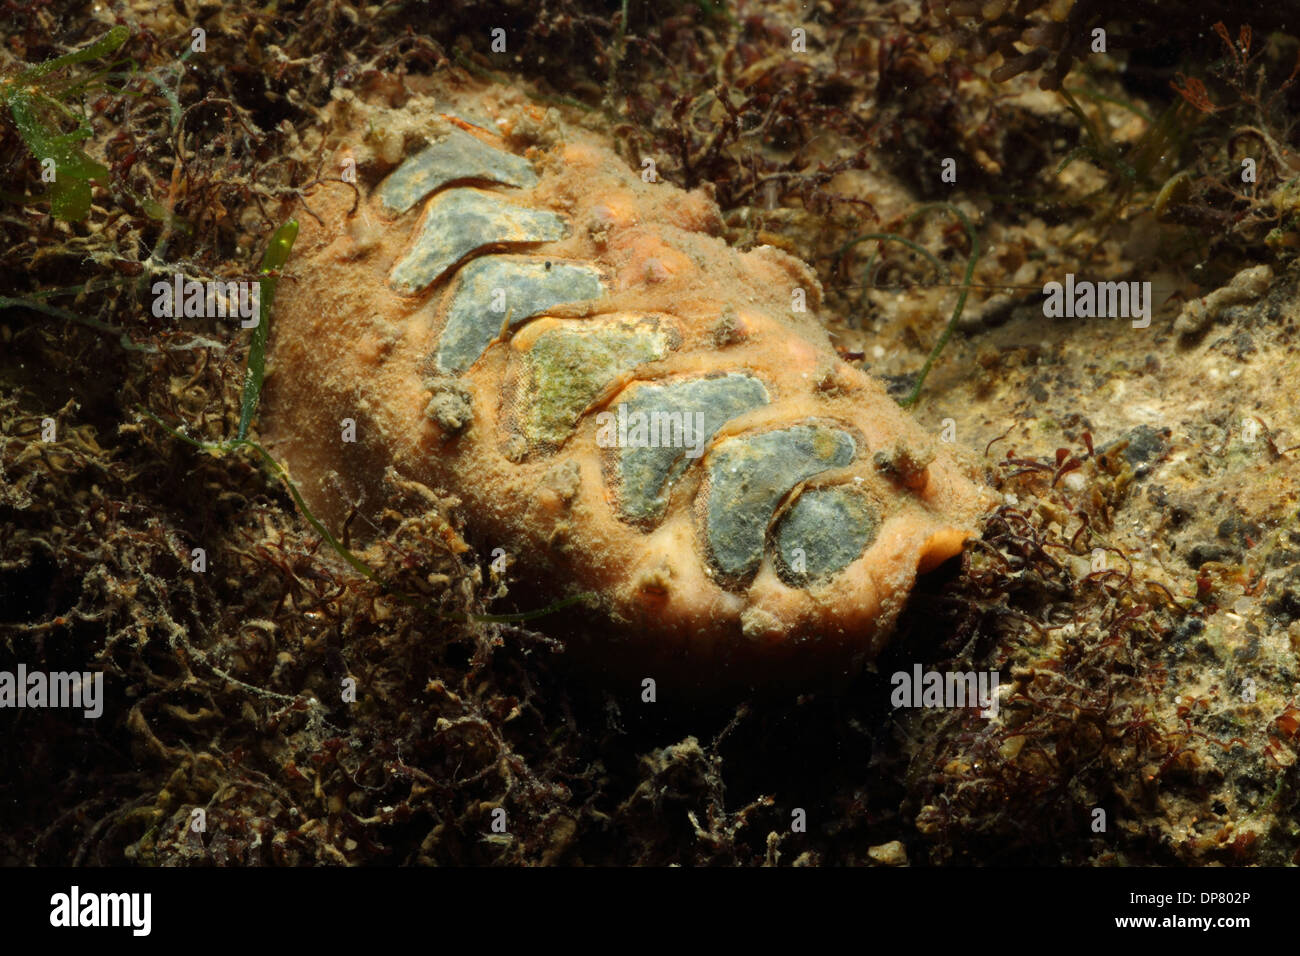 Chiton (Acanthochitona crinita) adult, under stone on shore, Poole Harbour, Dorset, England, October Stock Photo